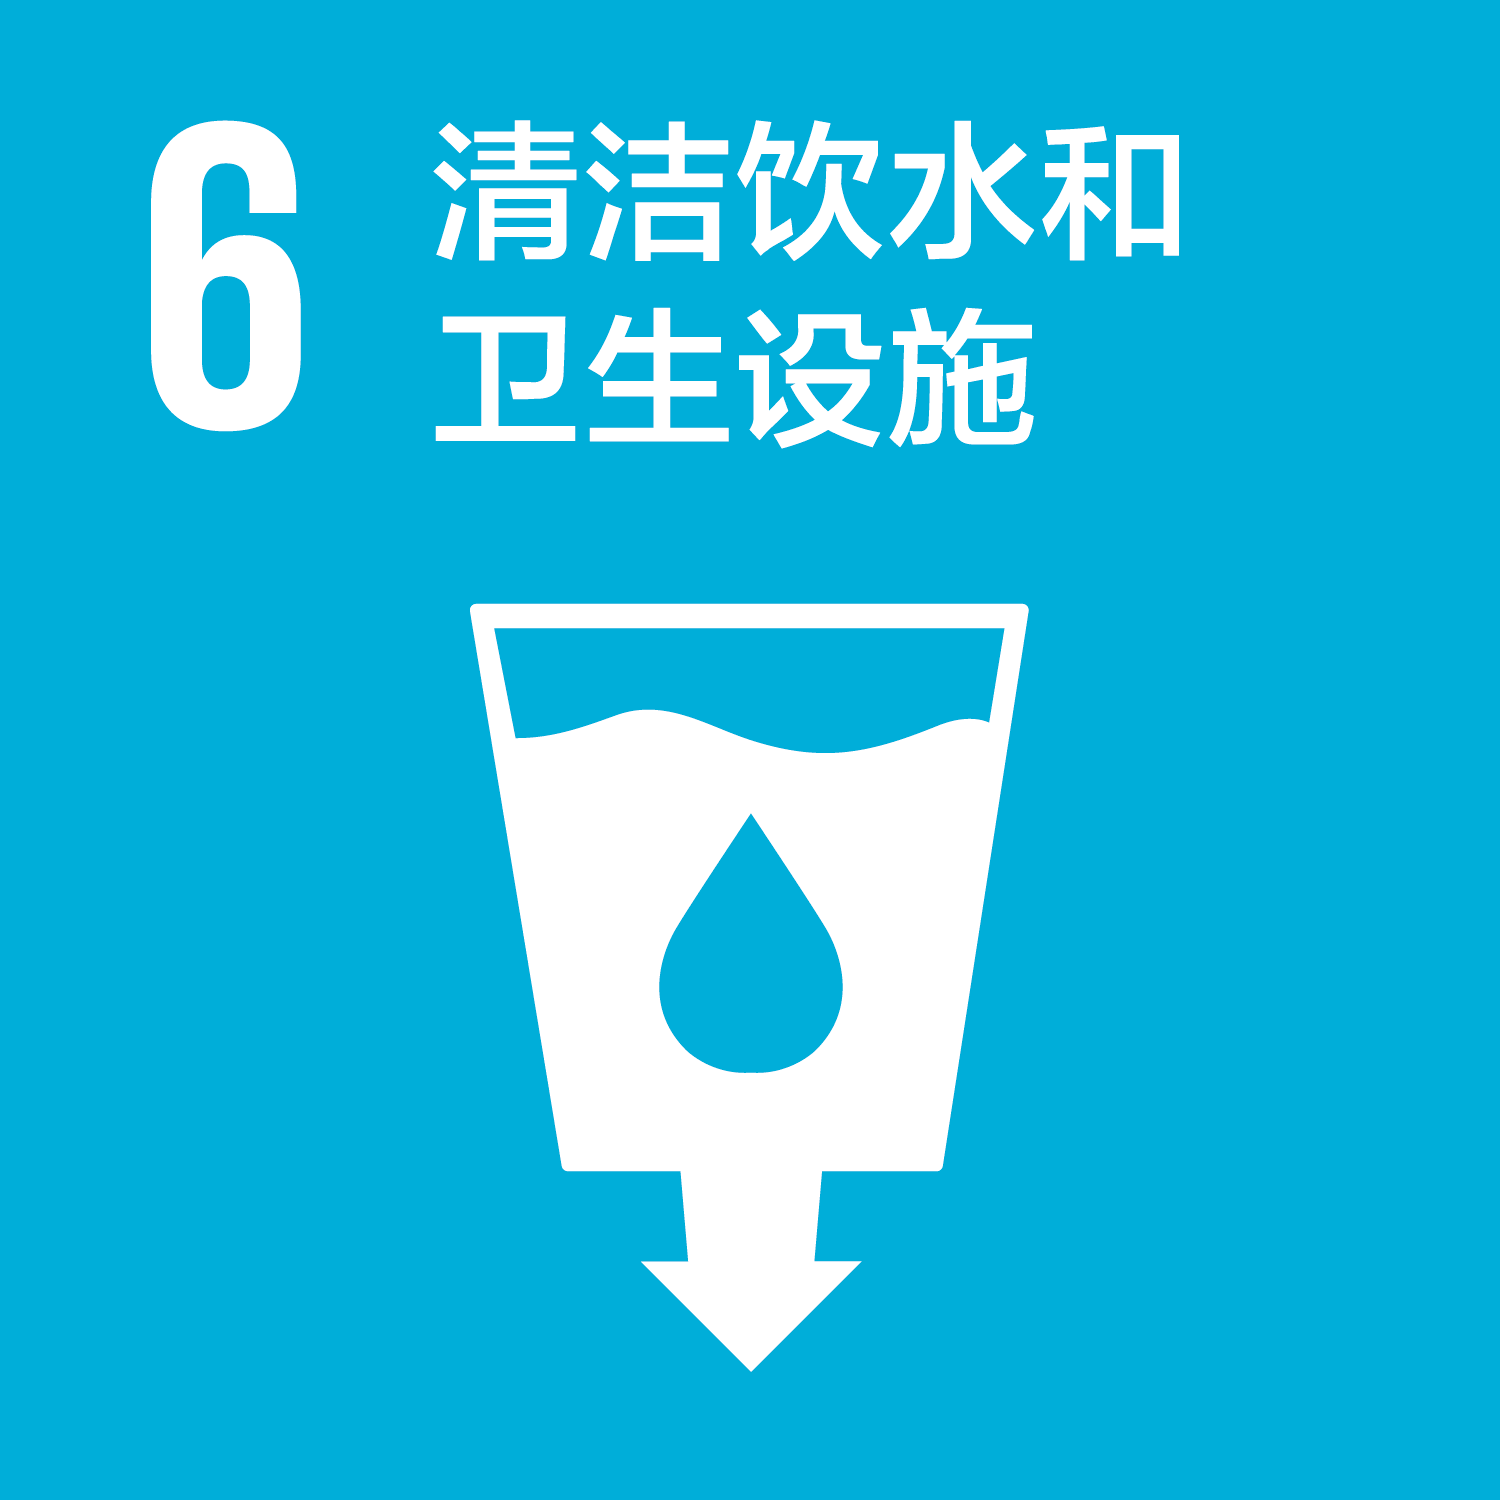 可持续发展目标-6清洁饮水和卫生设施